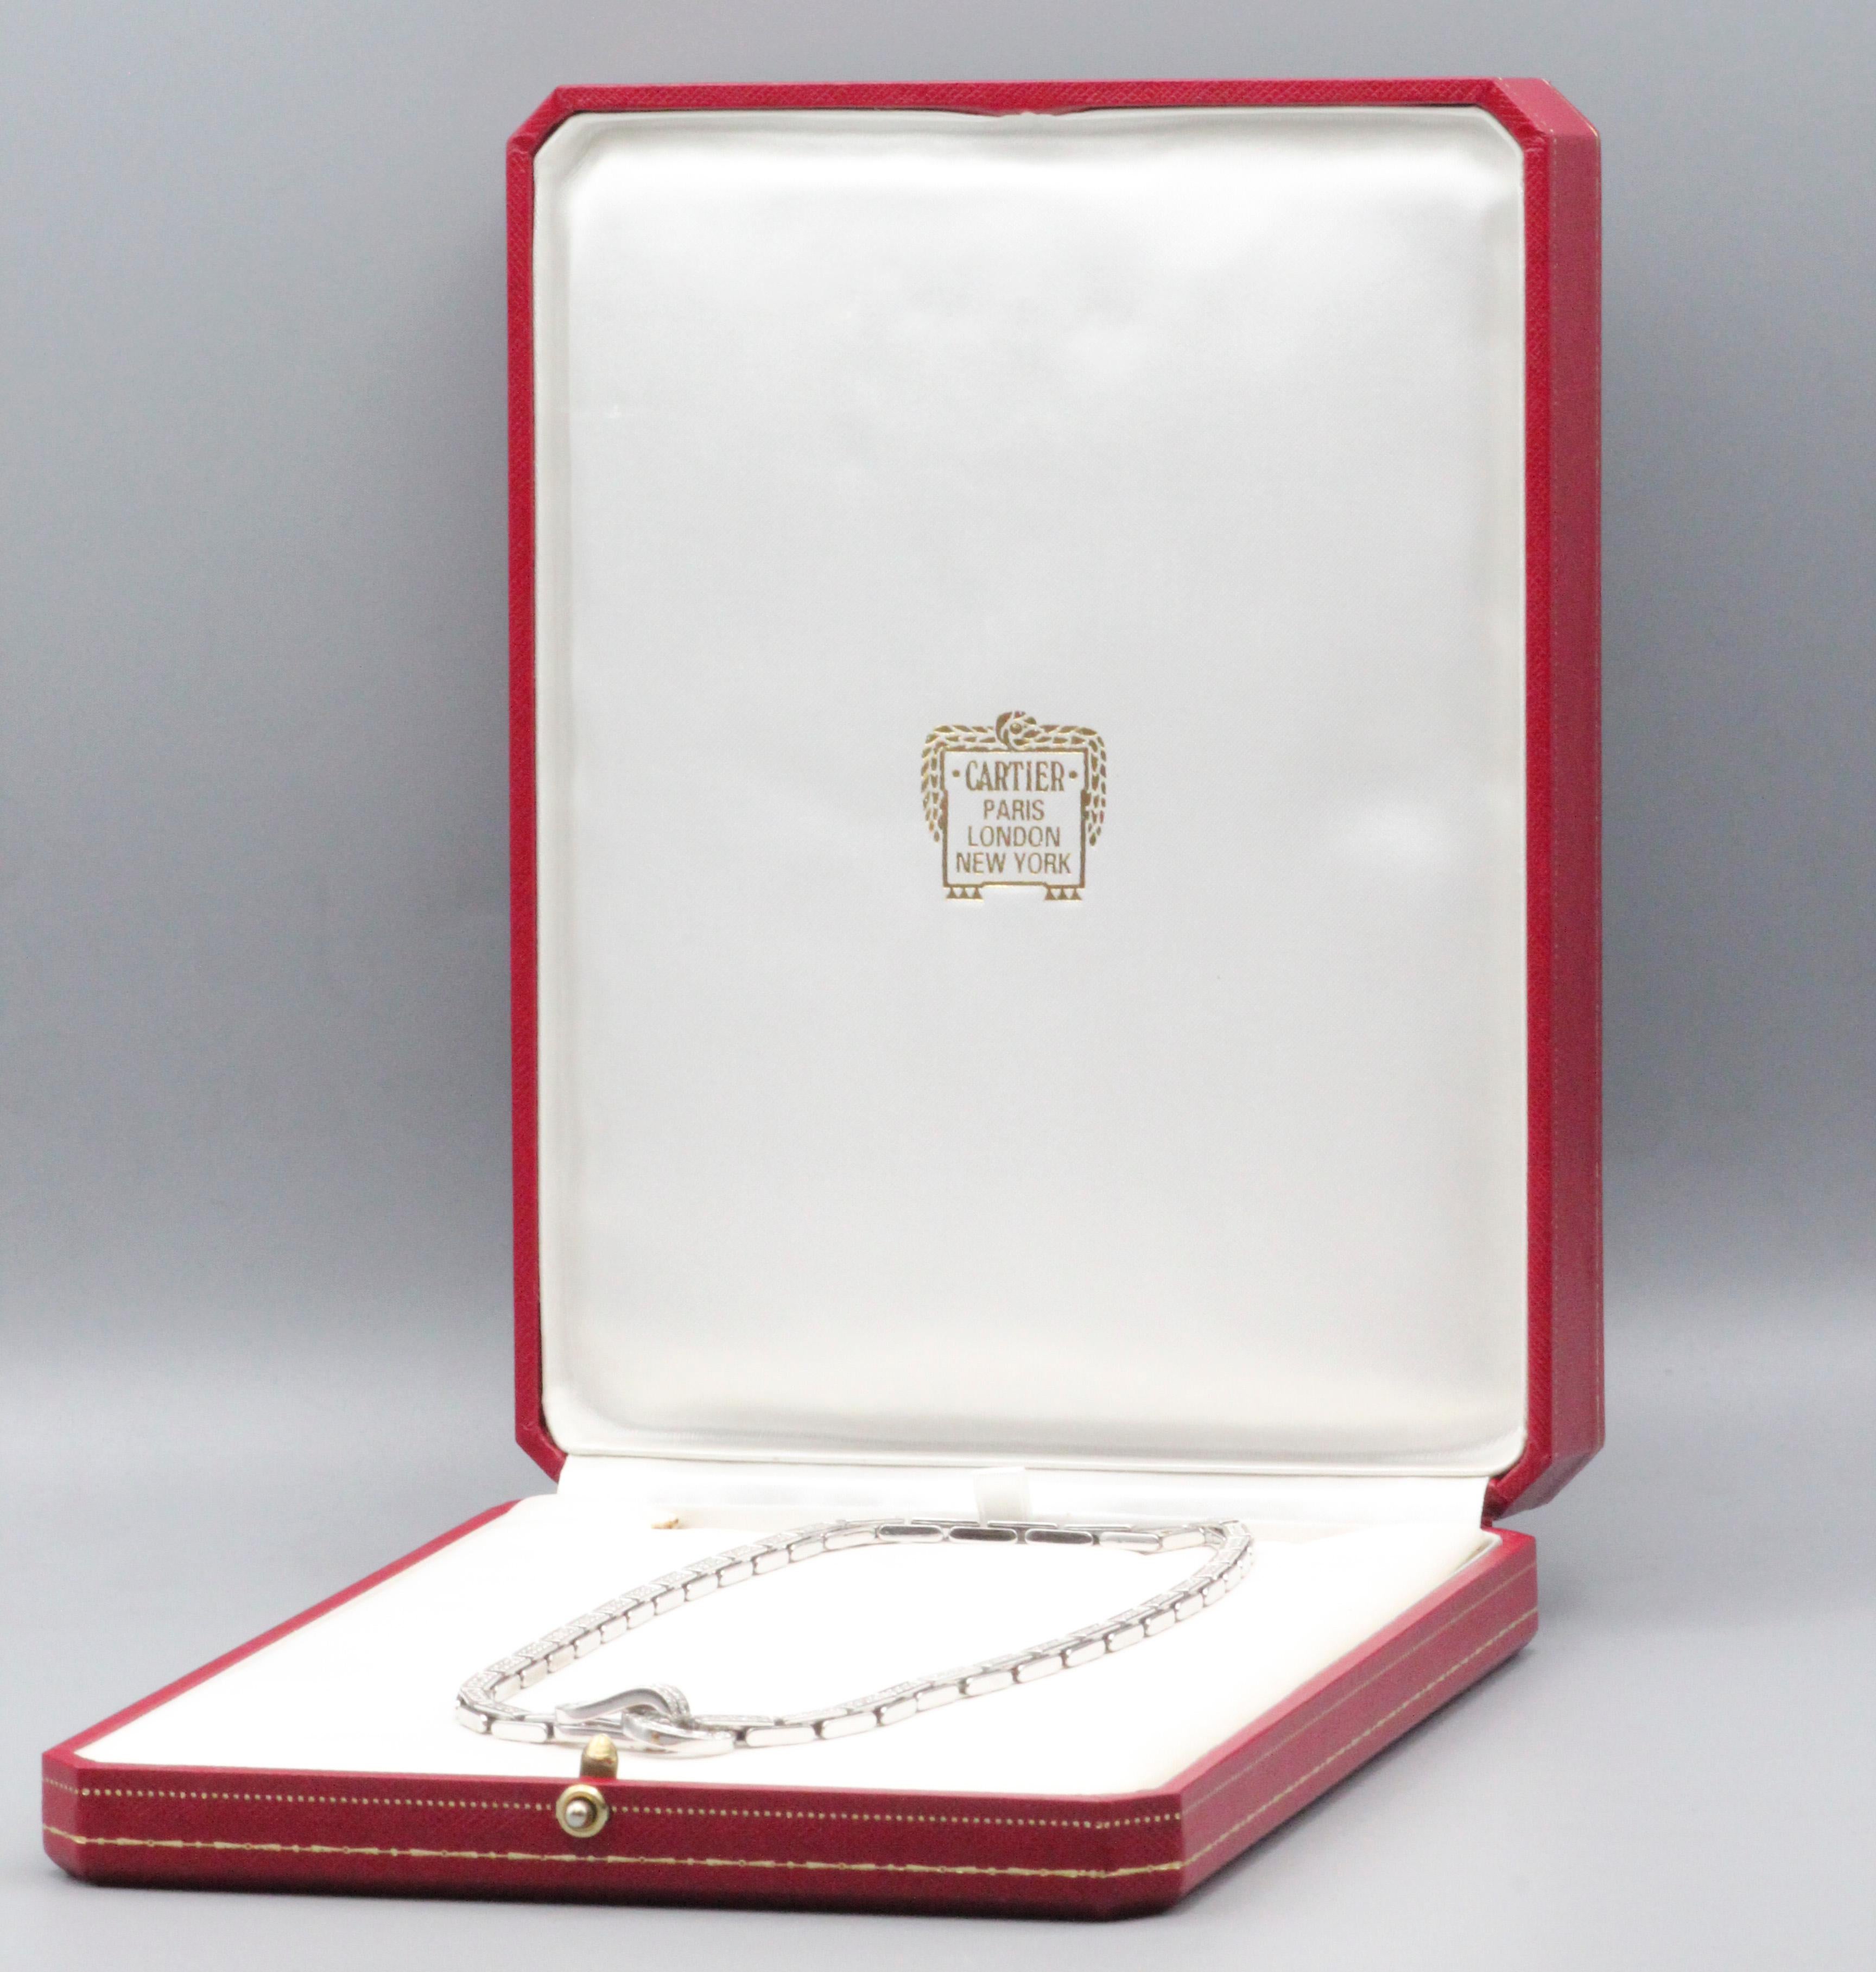 Offrez-vous le summum du luxe et du raffinement avec l'Agrafe de Cartier  Diamond 18k White Gold Necklace - un chef-d'œuvre radieux qui illustre l'attachement de Cartier à l'élégance intemporelle et à un savoir-faire impeccable. Ce collier exquis